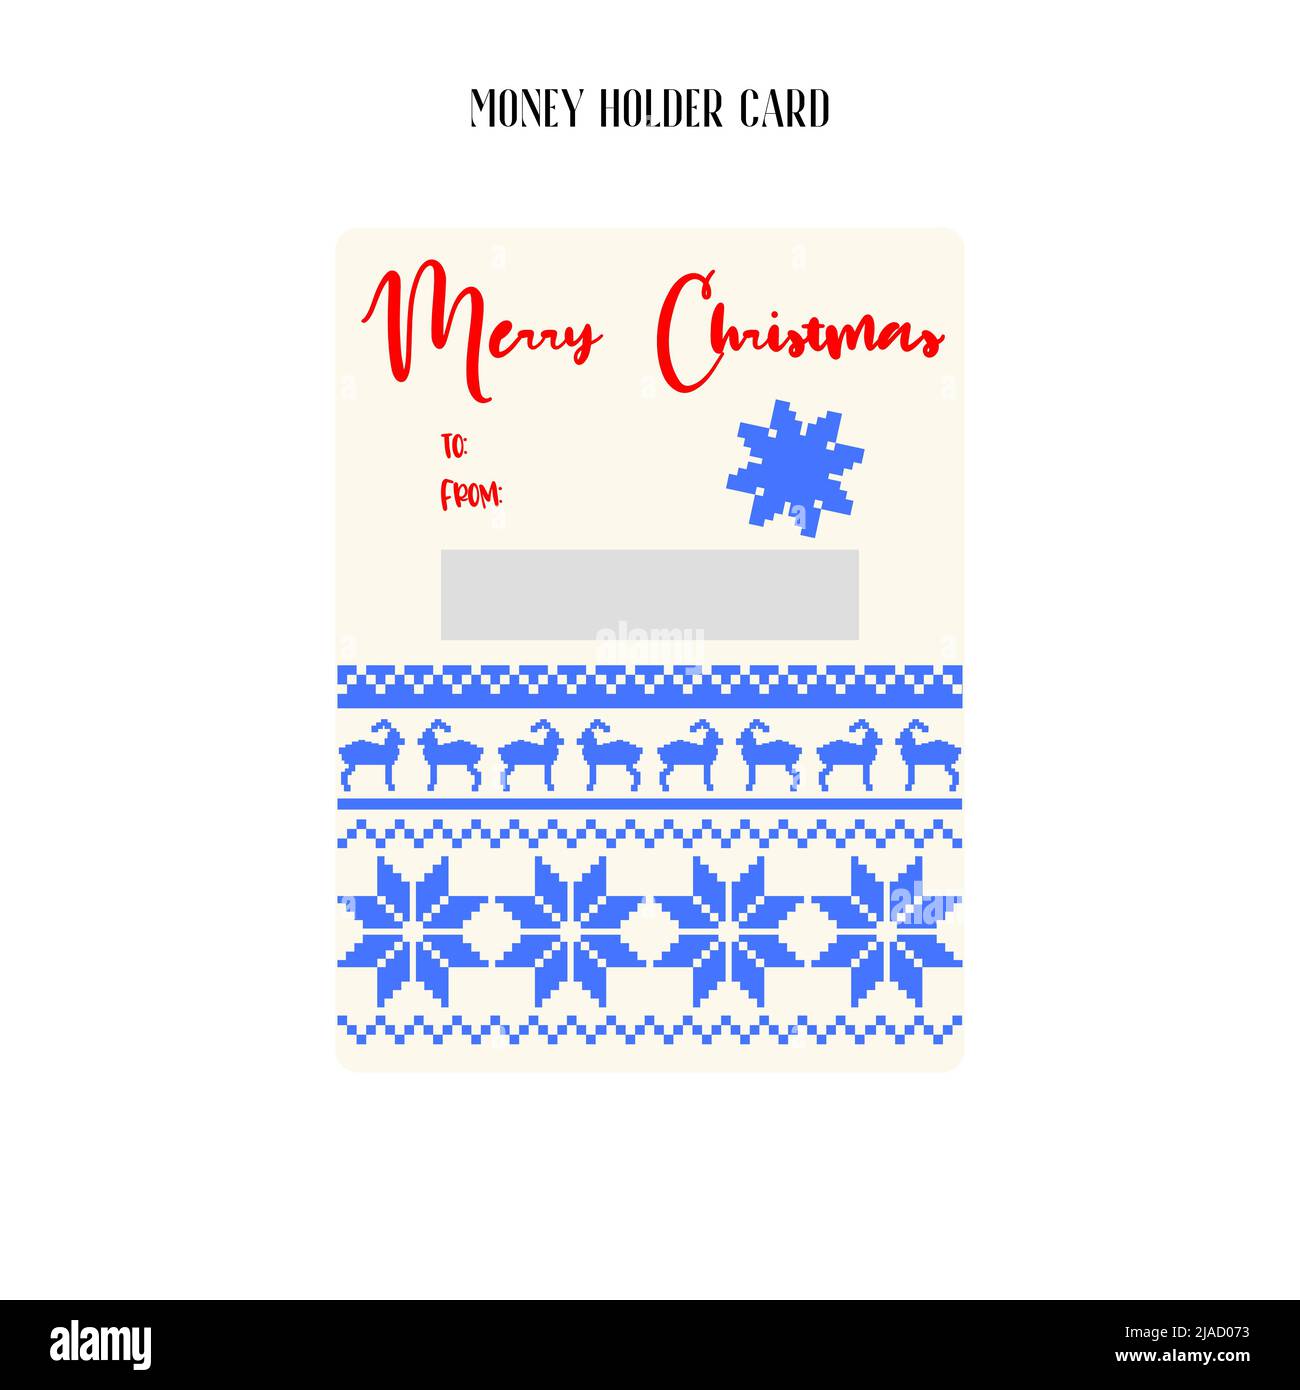 Printable Christmas Money Holder, Gift card, Cash Money Holder template. Stock Vector